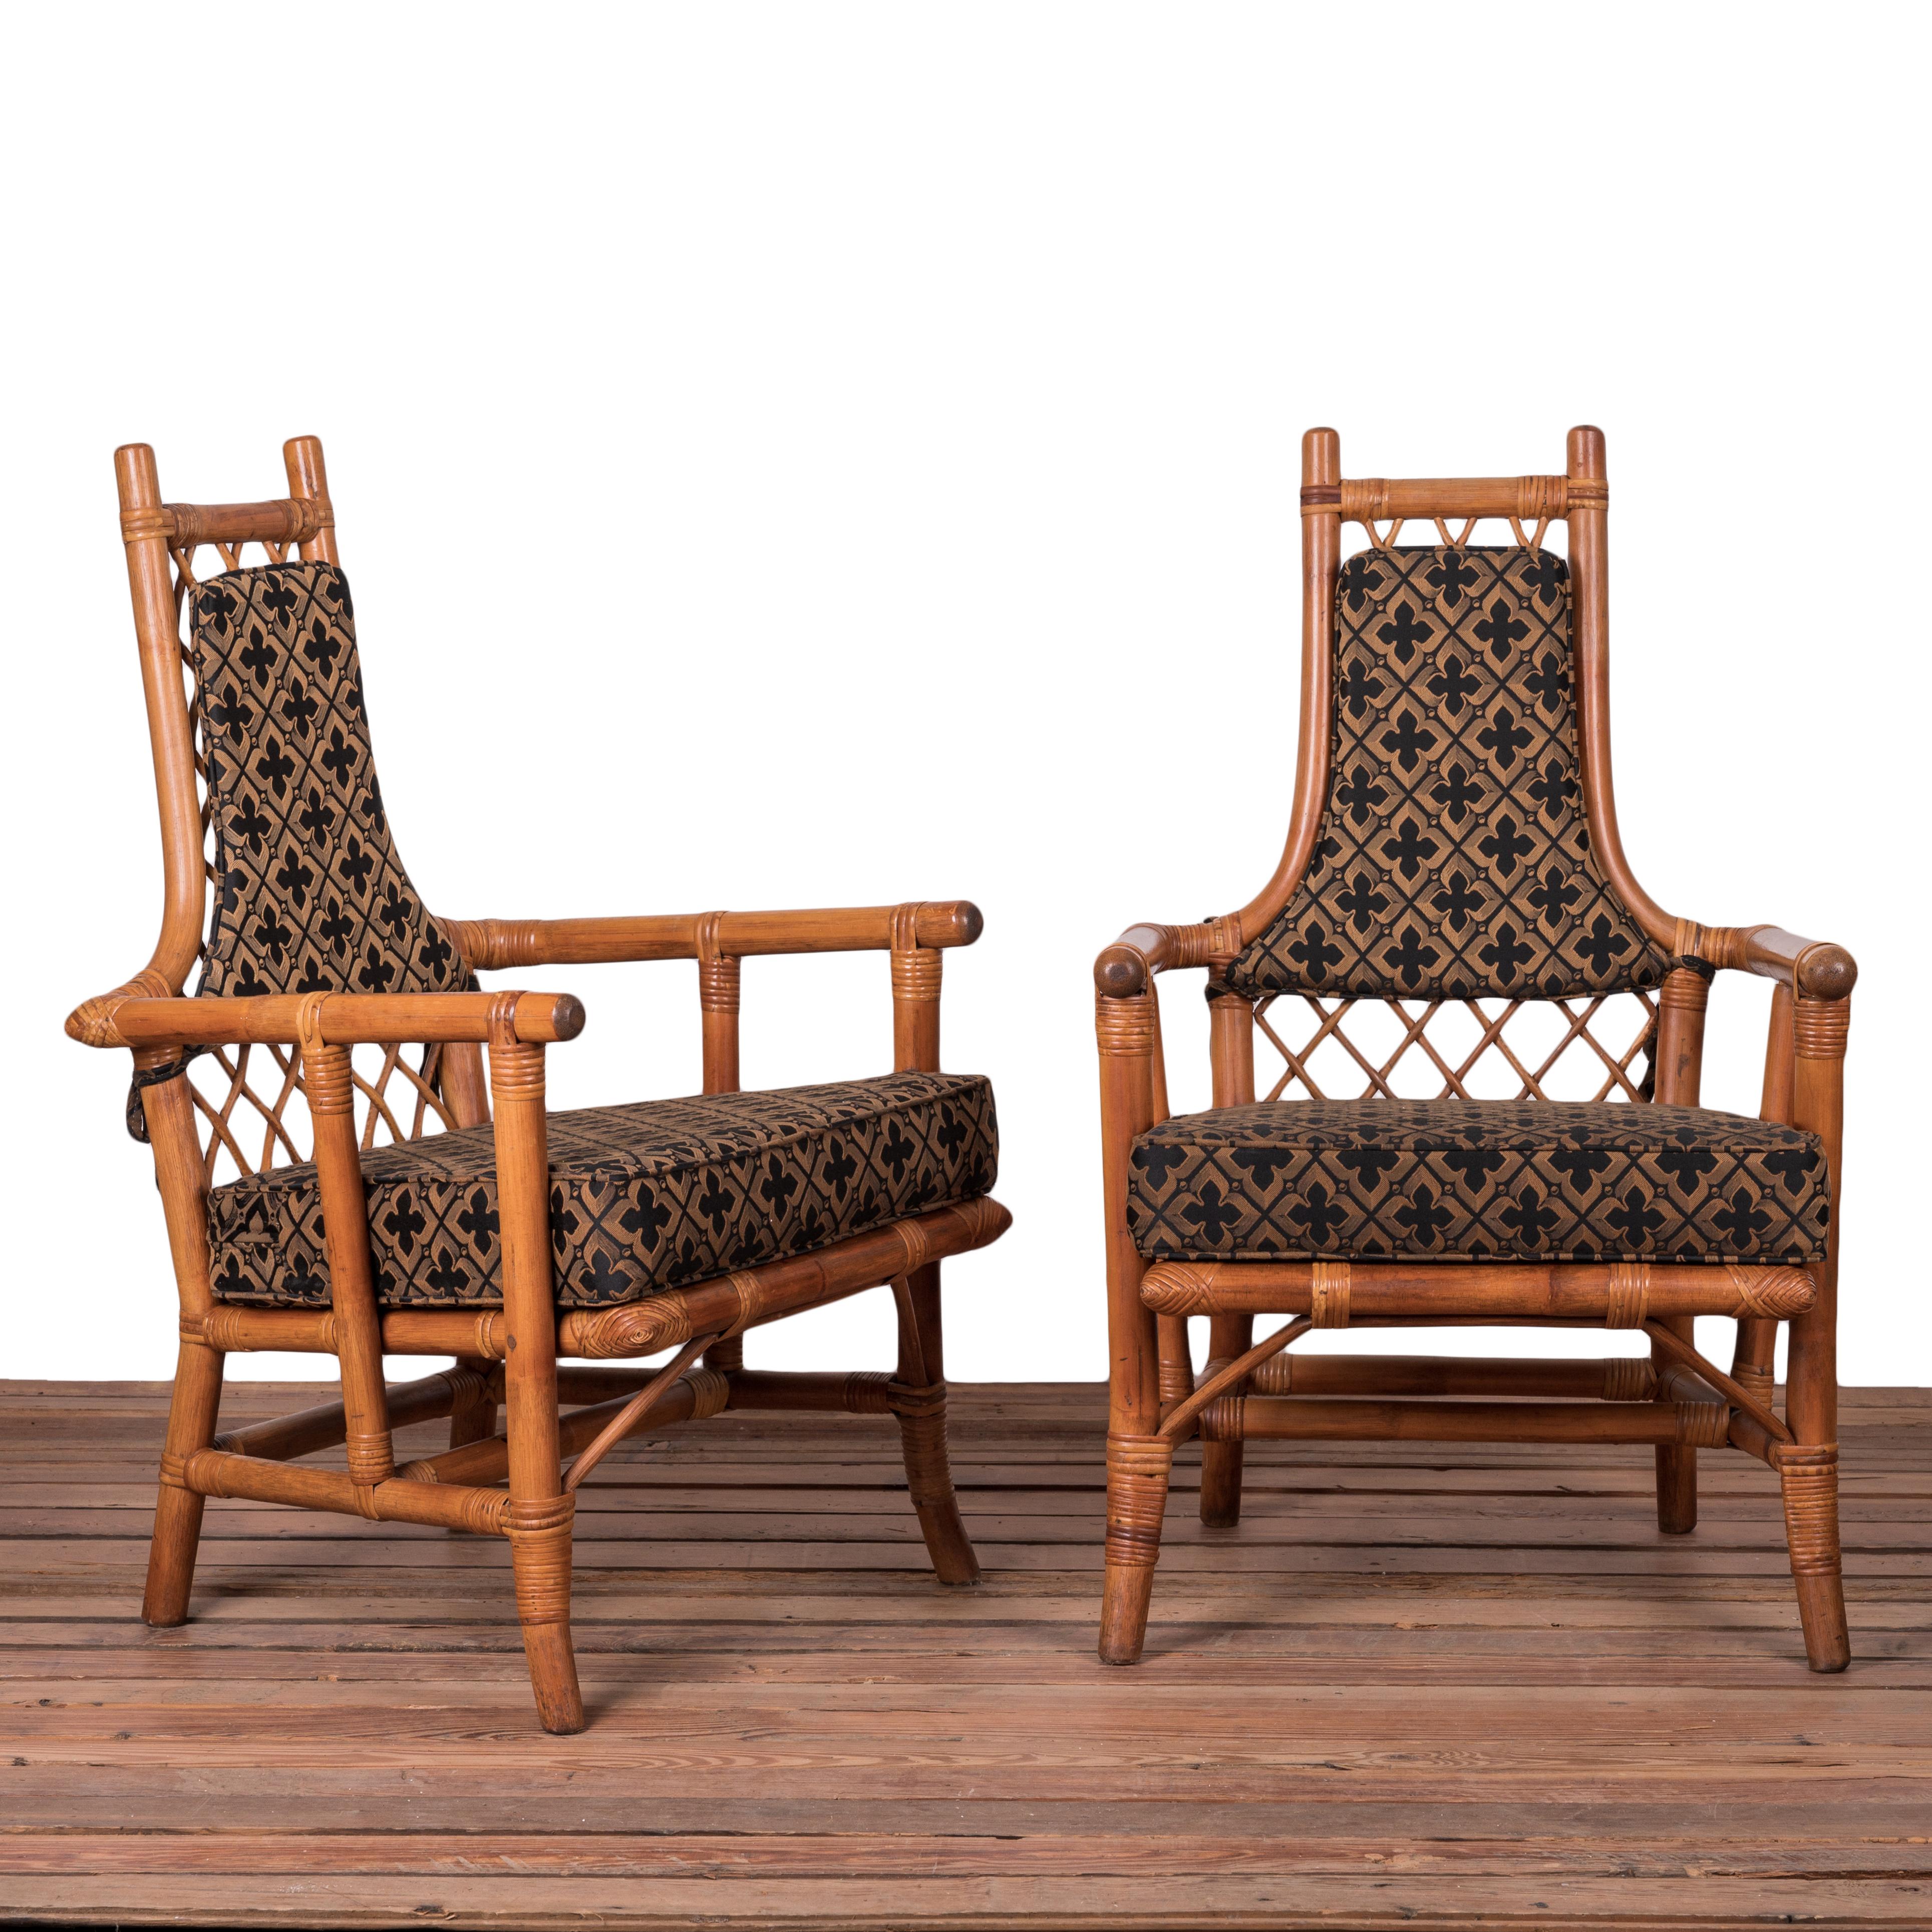 Ensemble de six chaises de salle à manger en bambou restauré, conçues par Tommi Parzinger et Henry Olko pour Willow & Reed, Inc. vers 1955. 

23 pouces de large par 24 ½ pouces de profondeur par 37 pouces de haut ; hauteur du siège 17 pouces ;